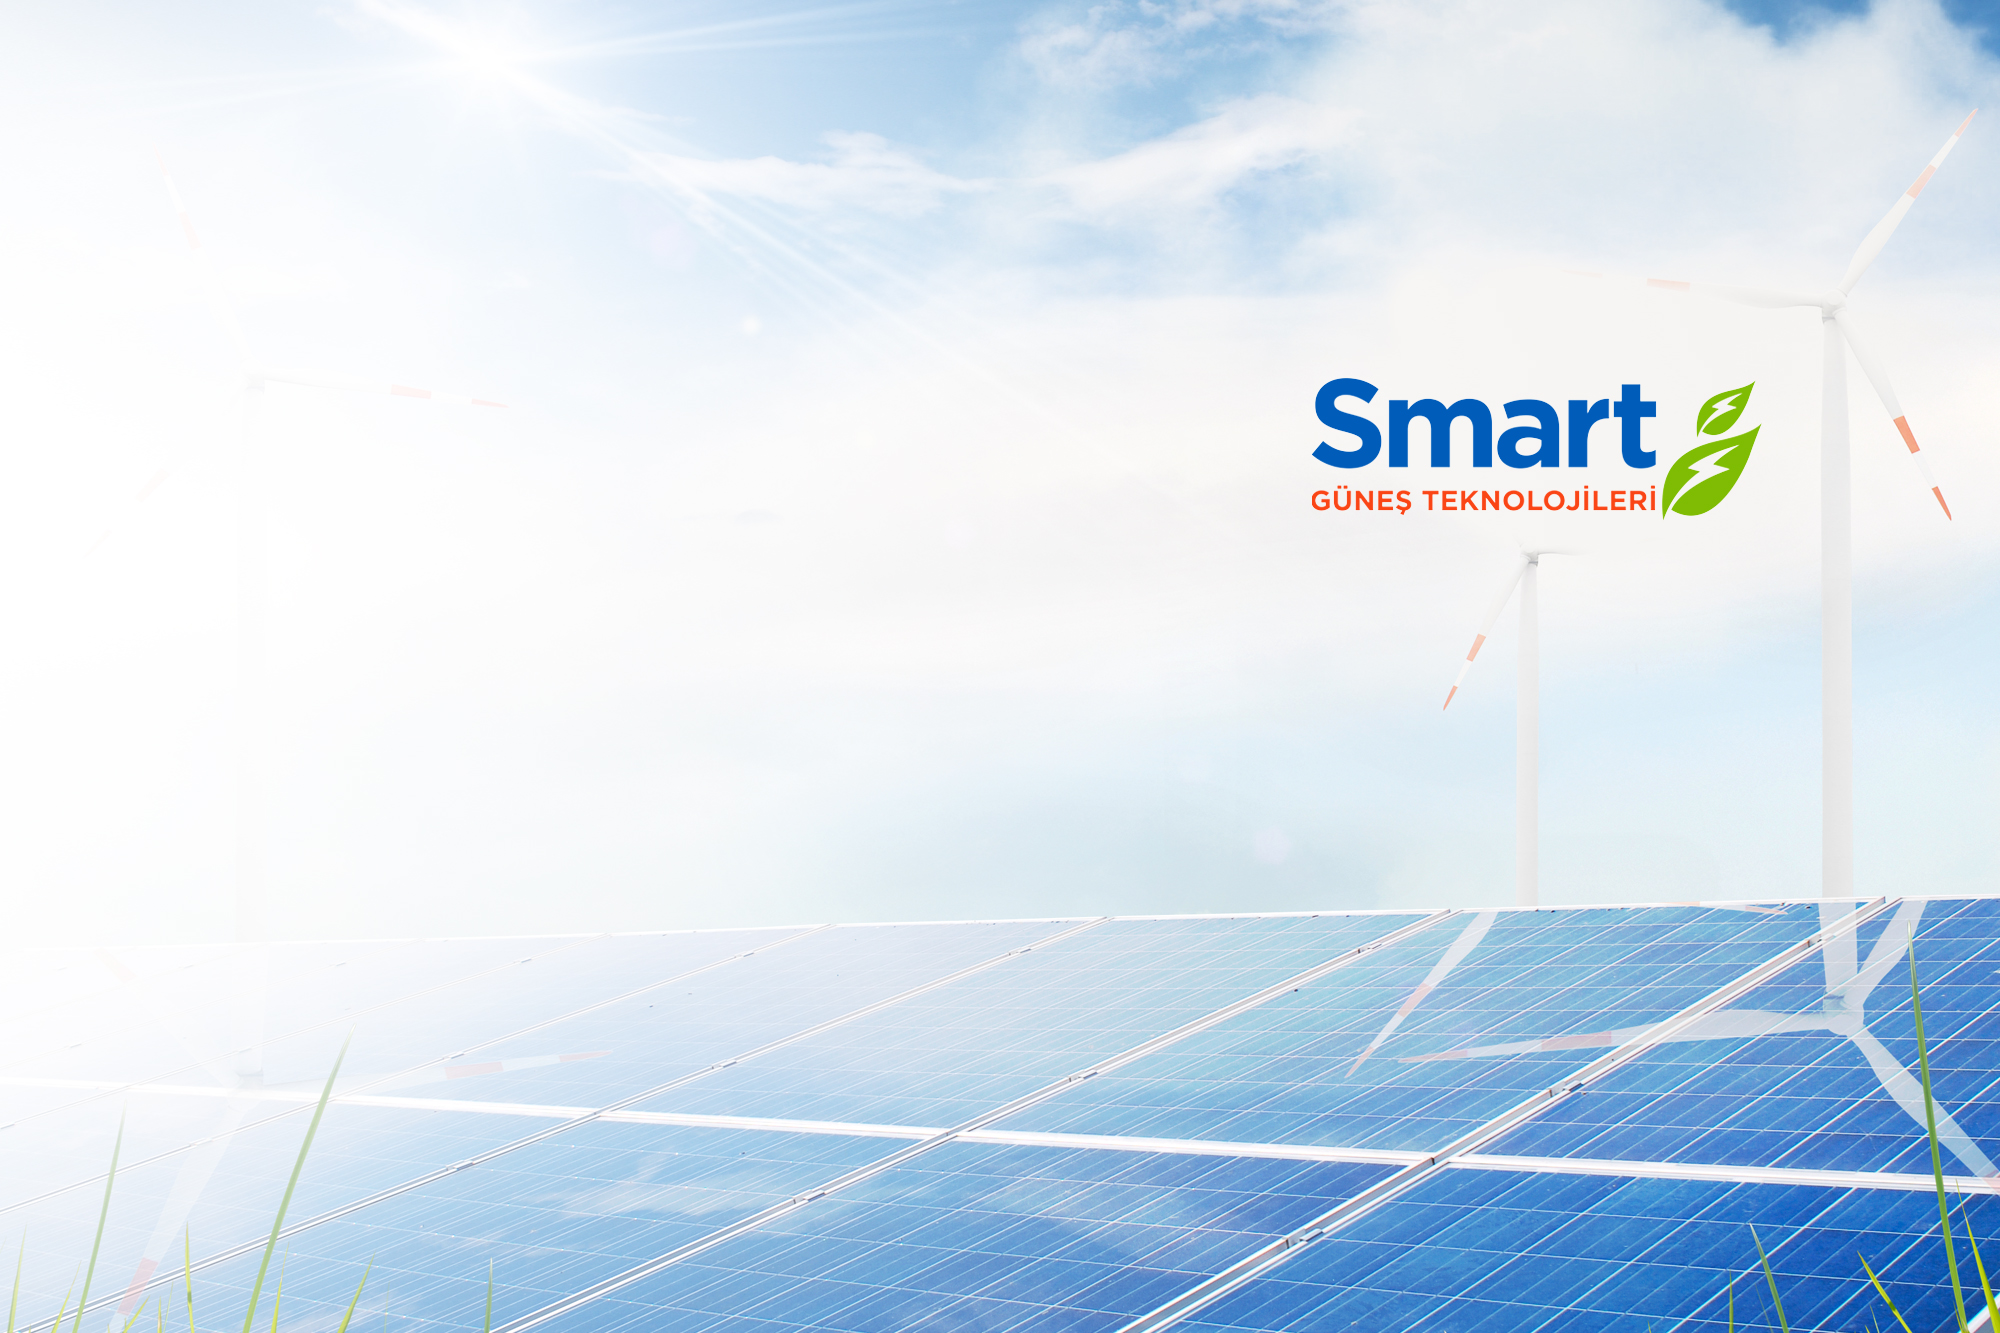 Smart Güneş Teknolojileri, 2023 yılında toplamda 1.2 Milyar TL’lik yatırıma imza atacak